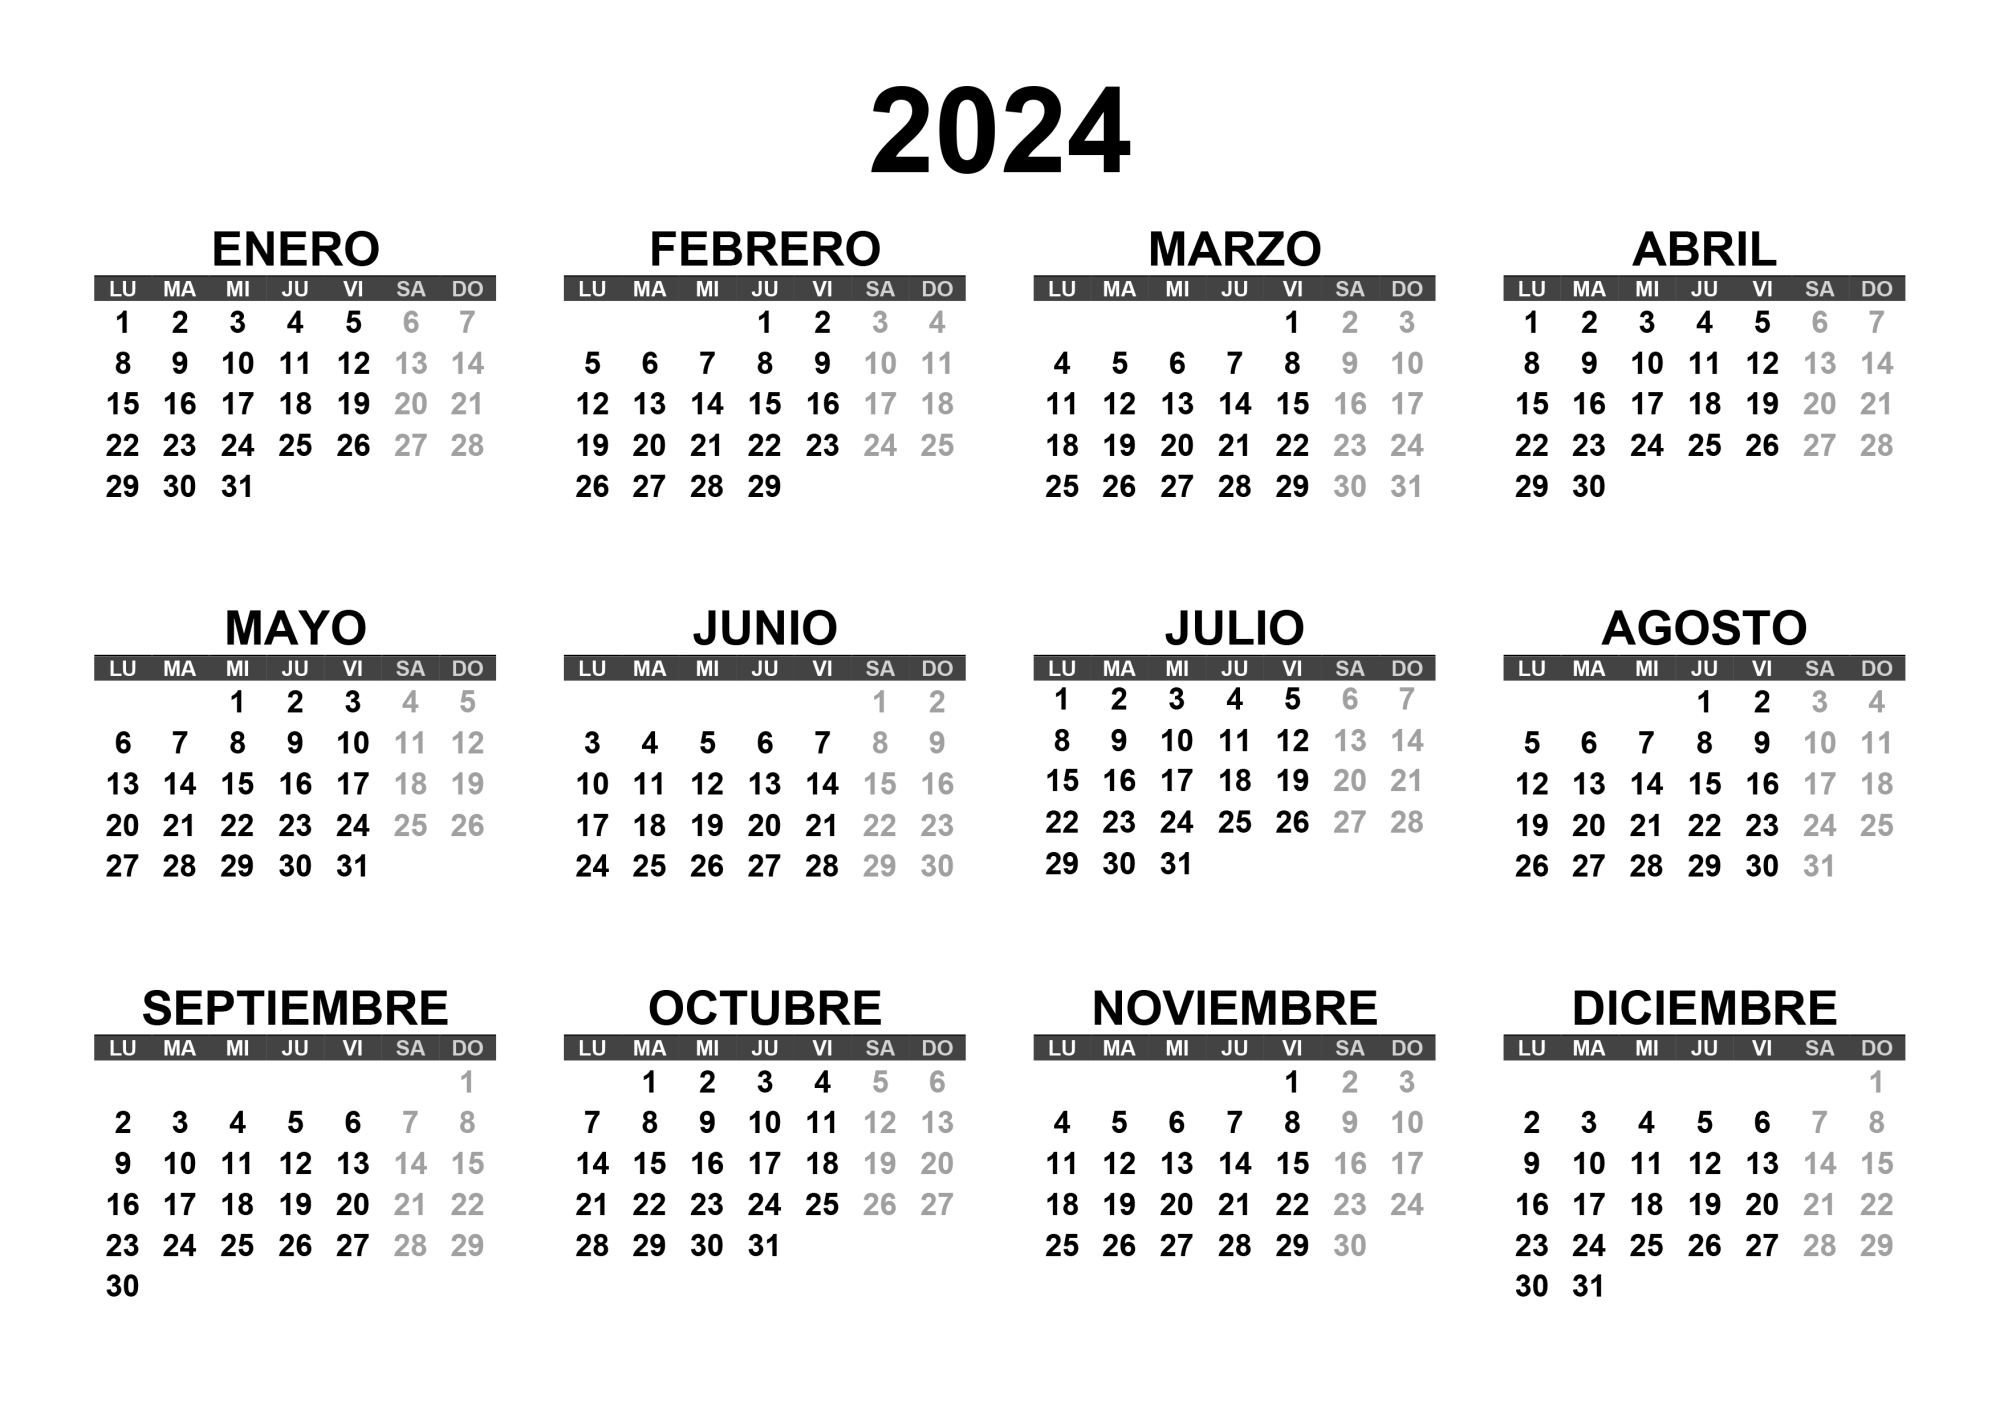 Por qué el calendario de 1996 podrá reutilizarse este 2024?